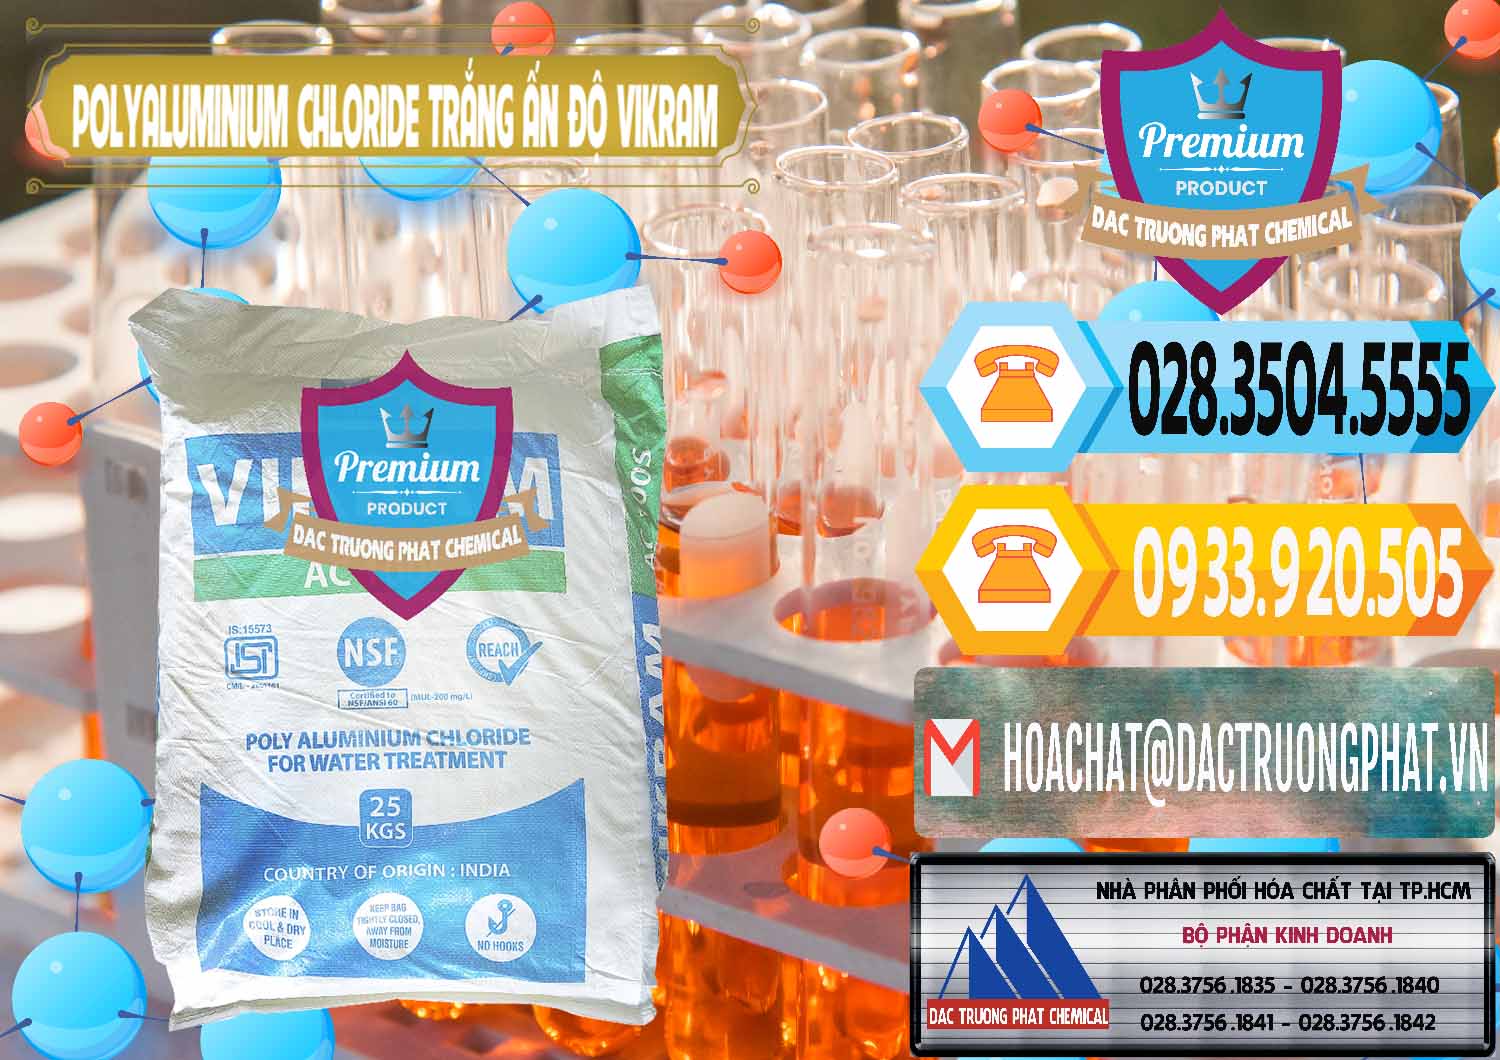 Nơi chuyên kinh doanh ( bán ) PAC - Polyaluminium Chloride Trắng Aditya Birla Grasim New 2022 Ấn Độ India - 0486 - Cty kinh doanh ( cung cấp ) hóa chất tại TP.HCM - hoachattayrua.net